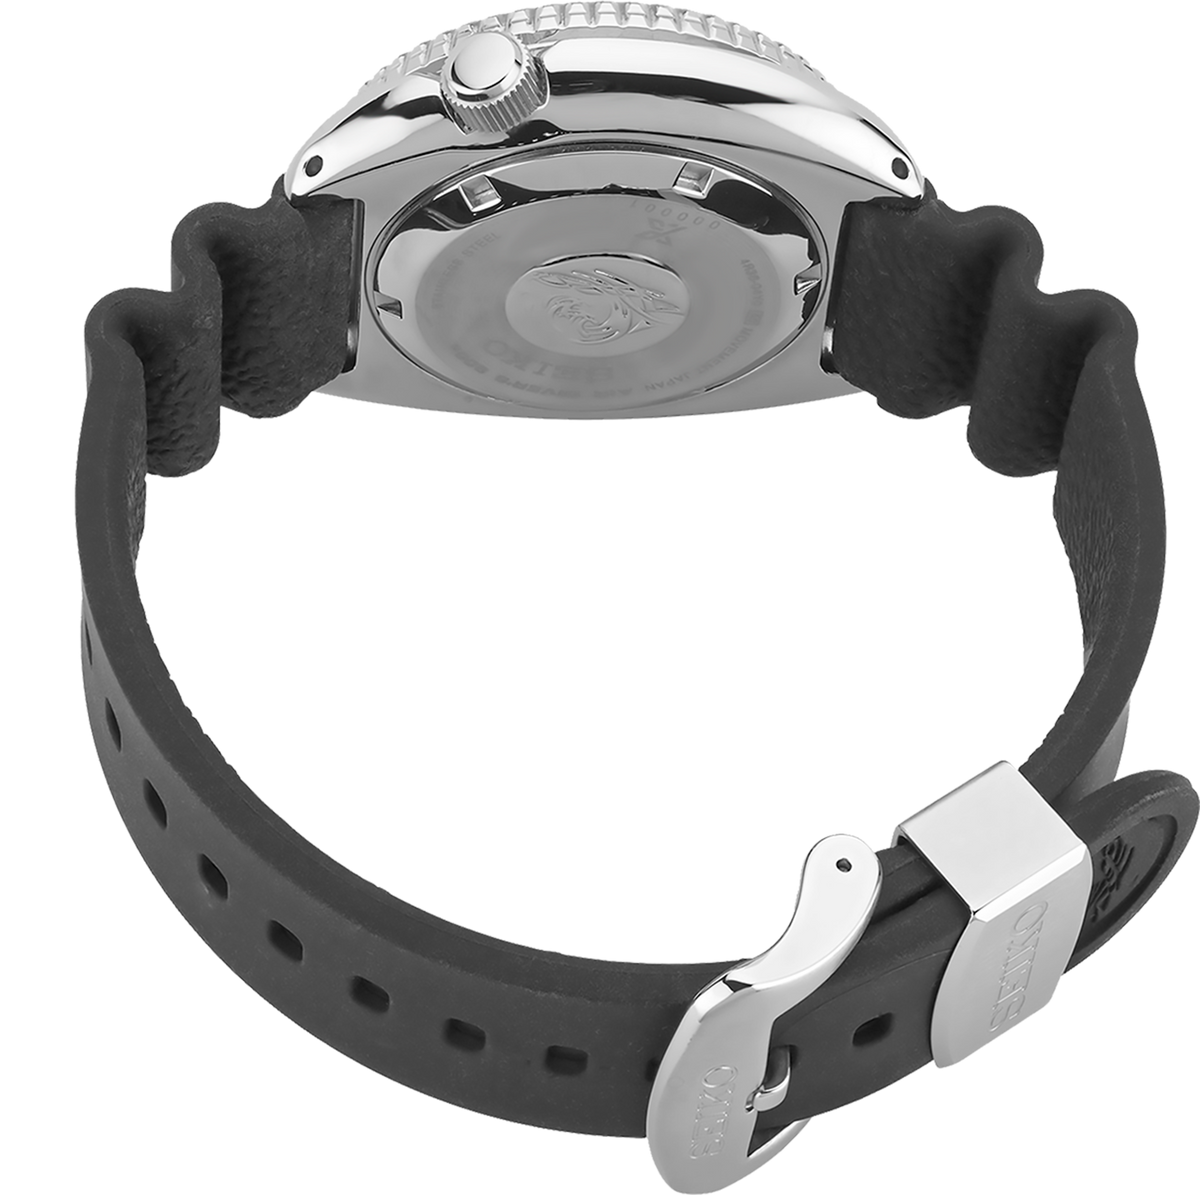 Seiko SRPE93 Prospex Turtle 45mm Case Black Rubber Strap Automatic Watch